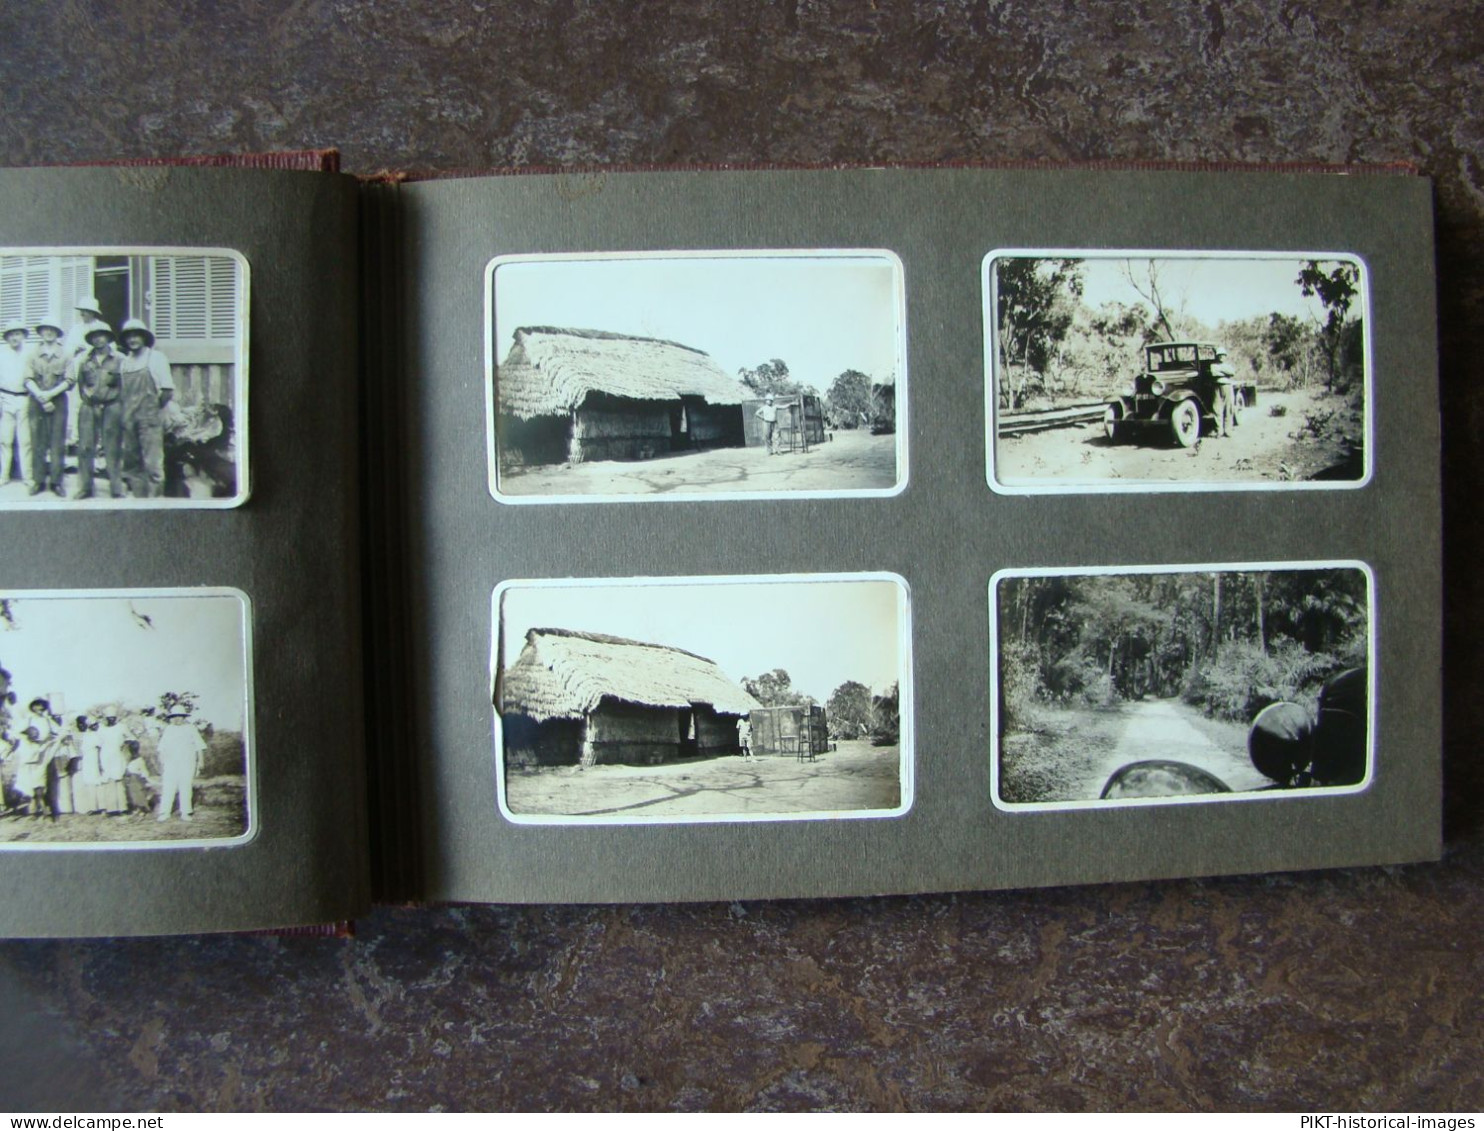 ALBUM PHOTOS ANCIEN SÉNÉGAL 1928 CHAUFFEUR TAXI-BROUSSE CAMION CHEVROLET DAKAR +100 PHOTOGRAPHIES AFRIQUE COLONIE